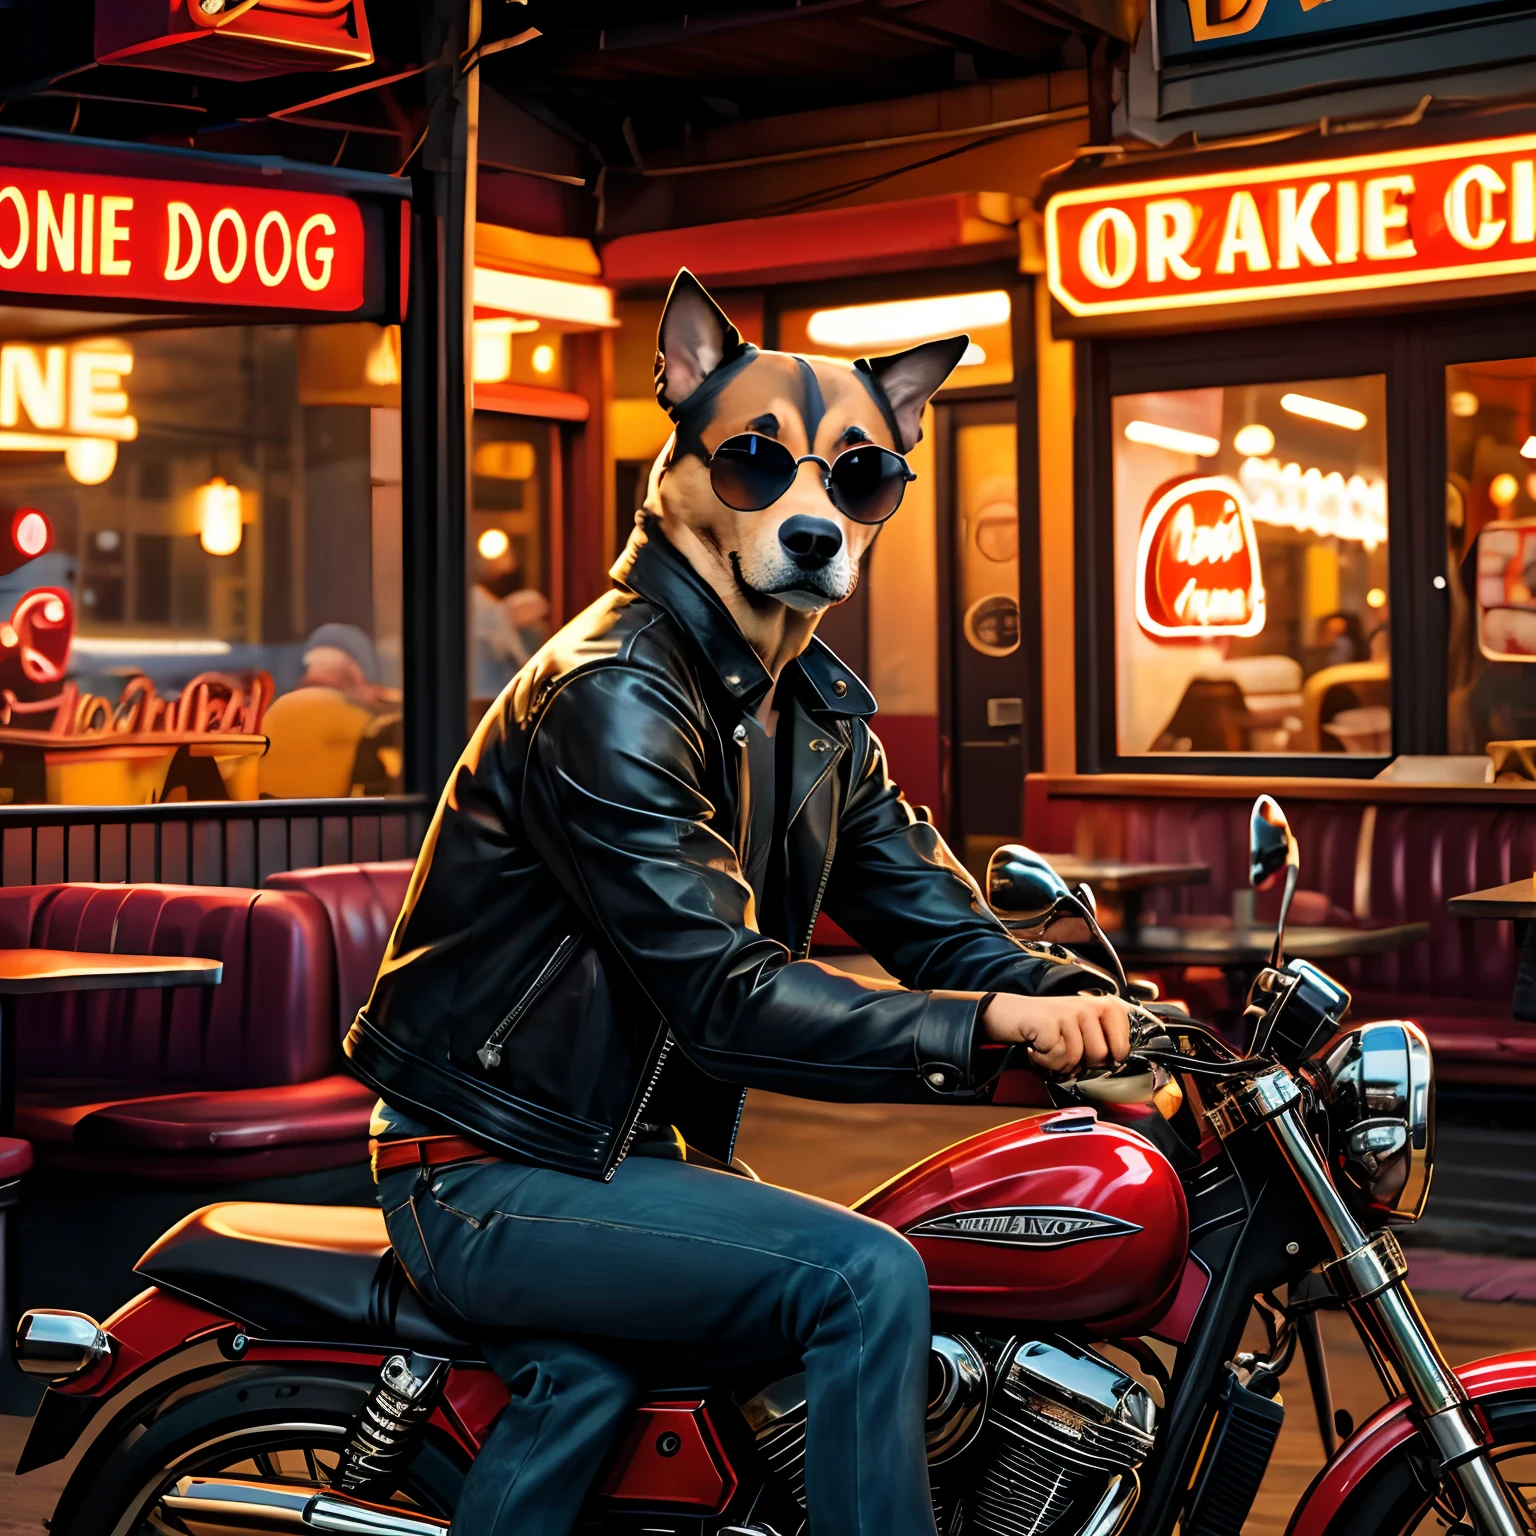 Erstellen Sie ein Bild von einem Hund, der eine Lederjacke und eine Sonnenbrille trägt, auf einem Motorrad vor einem Diner sitzen. Der Hund hat einen traurigen und Ausdruck, als würde er auf jemanden warten, der nie auftaucht. Das Diner hat ein Neonschild mit der Aufschrift "Port Alveridge". Das Bild sollte einen realistischen und detaillierten Stil haben, ähnlich wie die Gemälde von Ivan Clarke, der Künstler des Hundes. Verwenden Sie warme und lebendige Farben, um die Stimmung des Hundes zu kontrastieren.